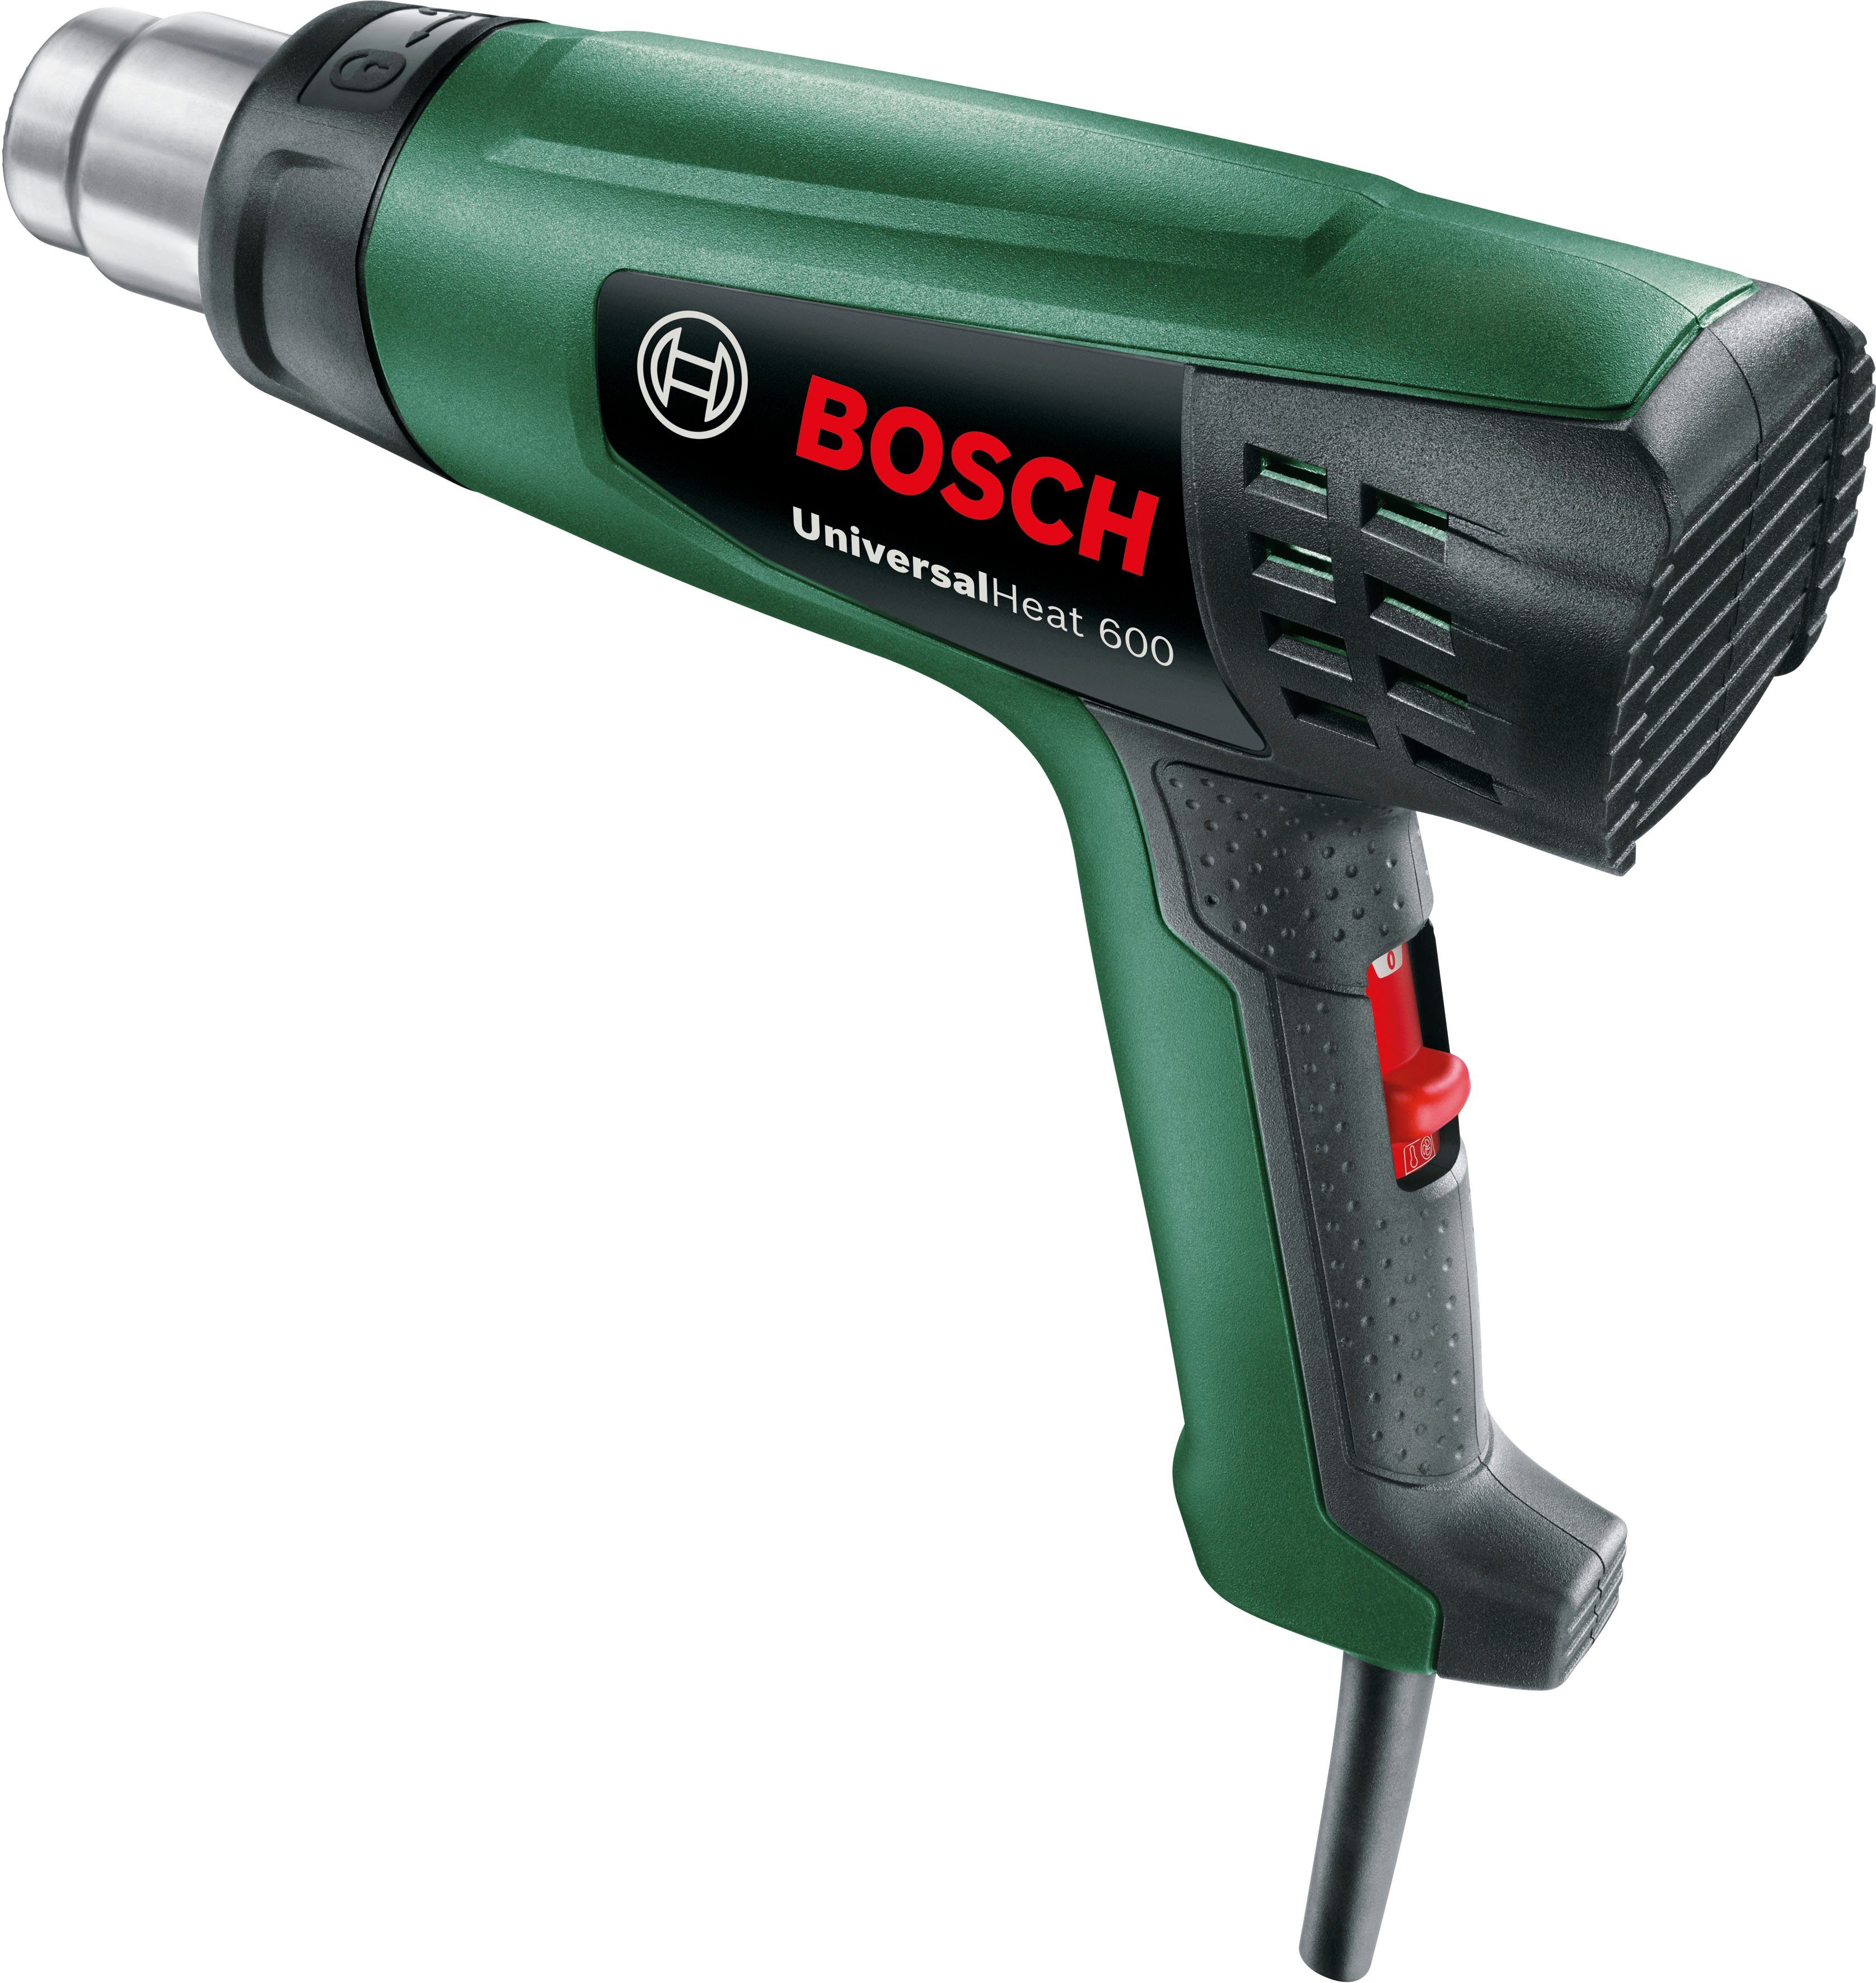 Bosch max. Heißluftgebläse °C & 600, Garden bis UniversalHeat Home 600